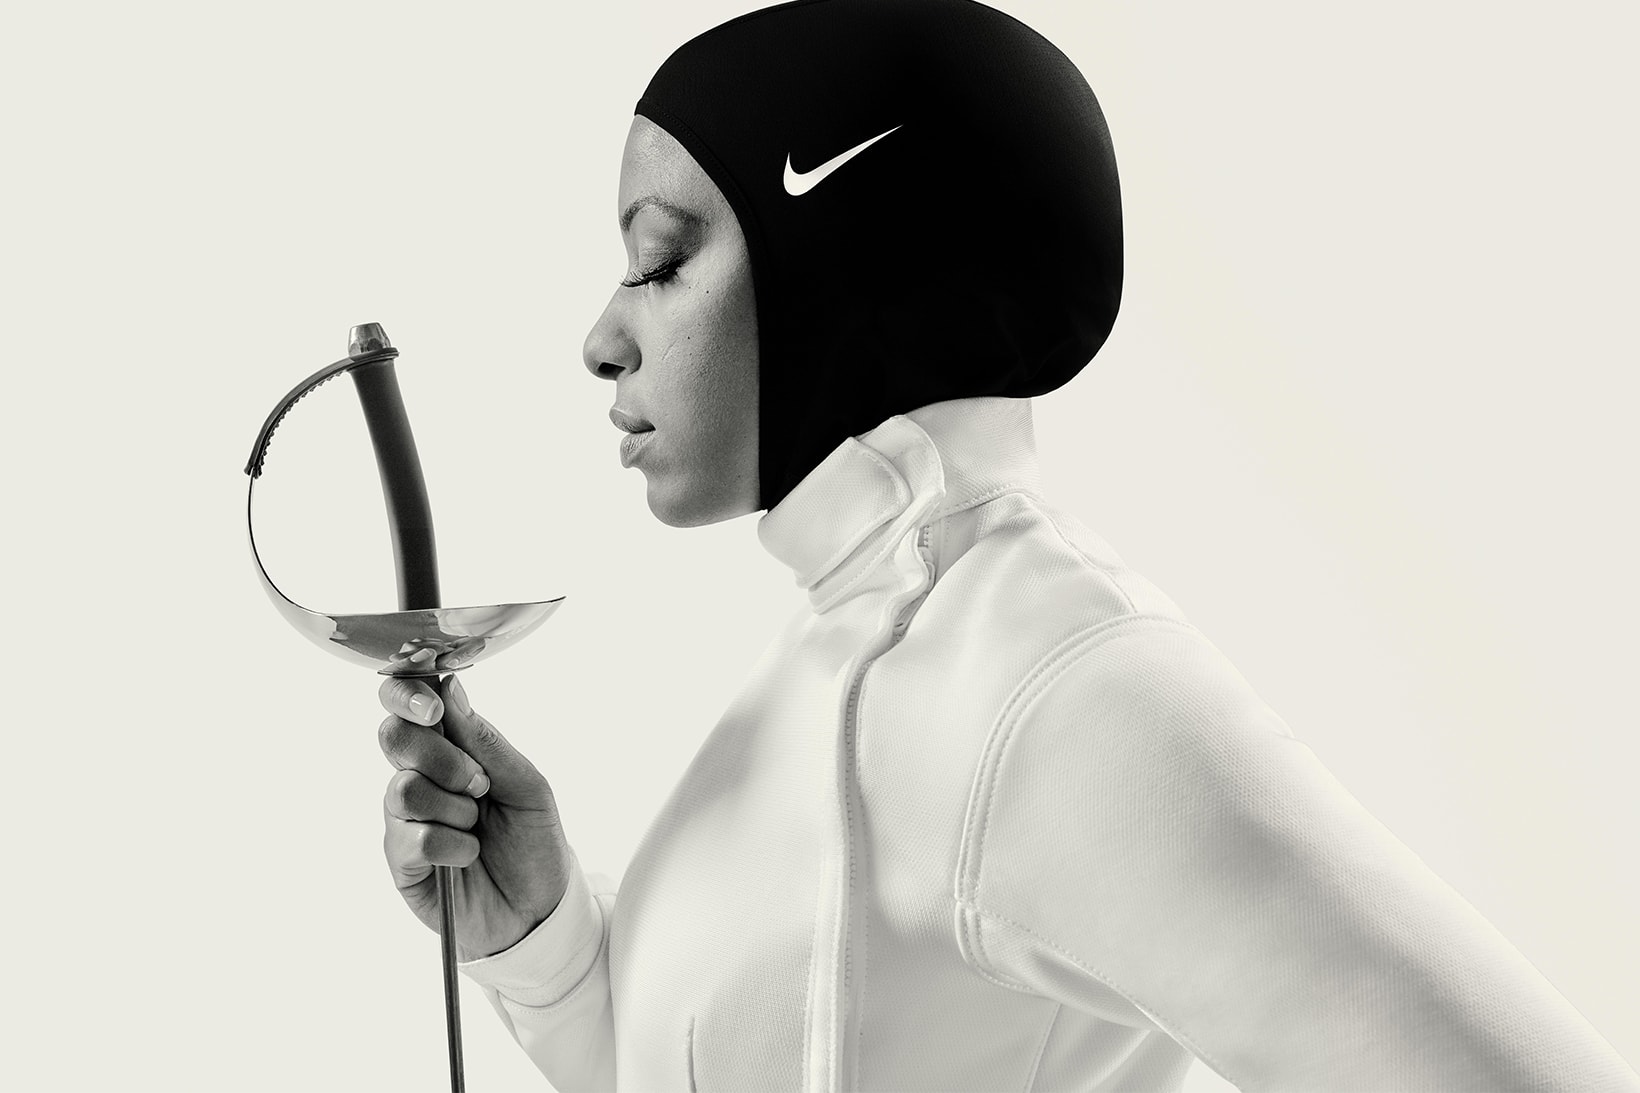 Nike Pro Hijab Launch 2017 December 1 Release Date Info Black Navy Obsidian Muslim Sports buy purchase women woman store